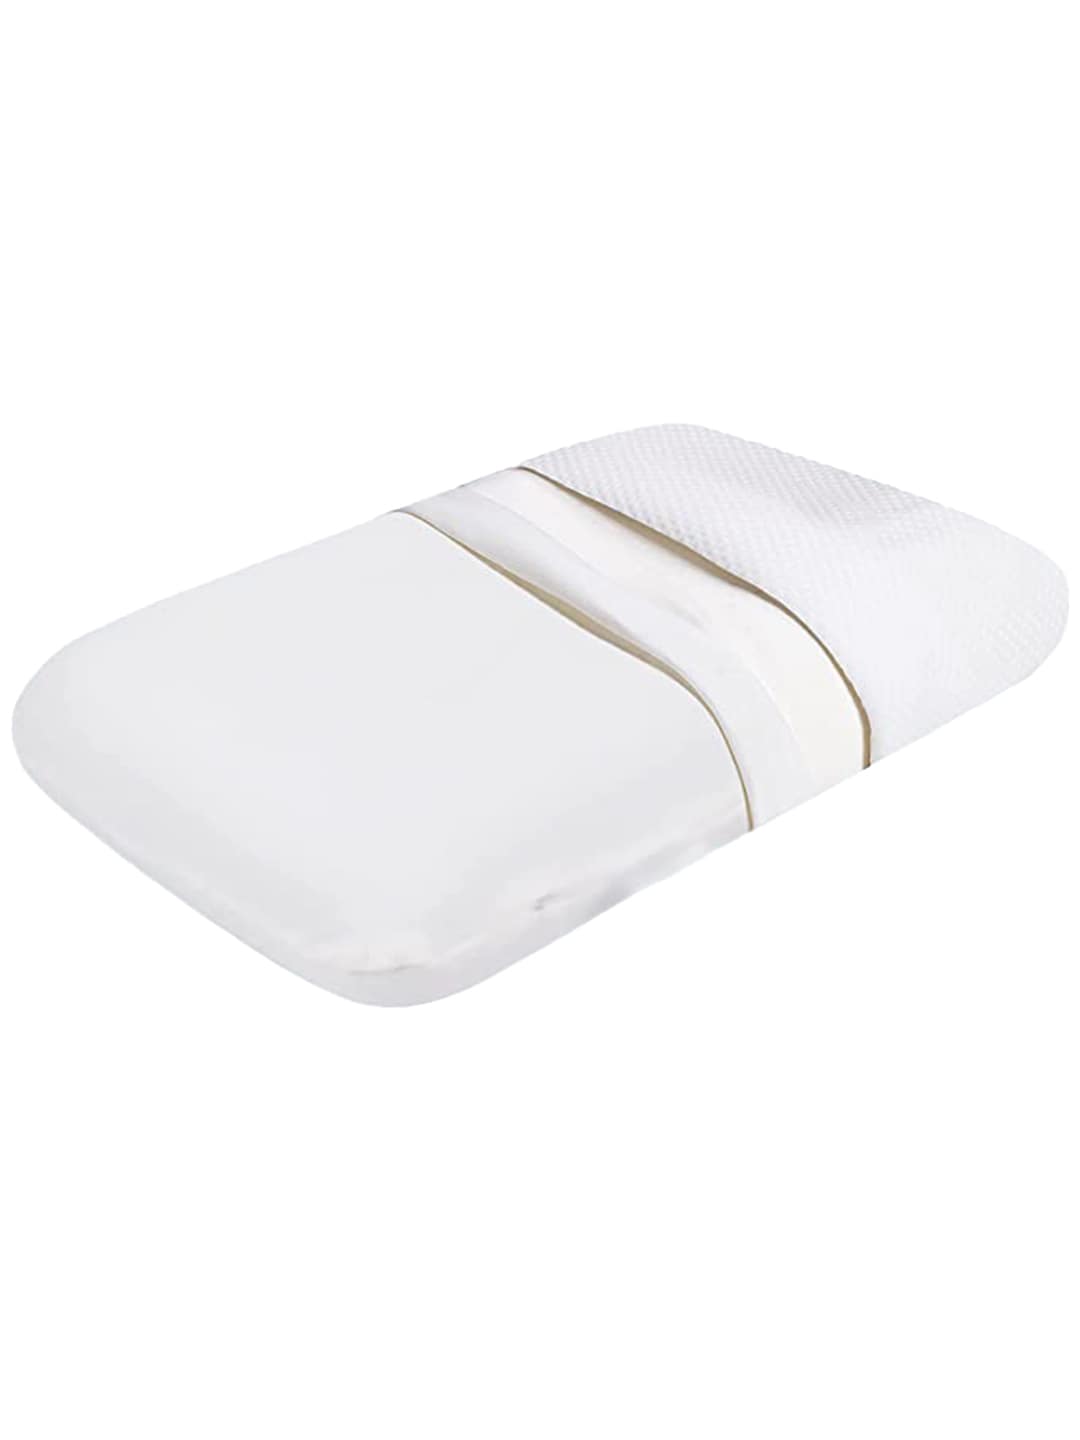 Sleepsia  White Solid Cotton Pillows Price in India